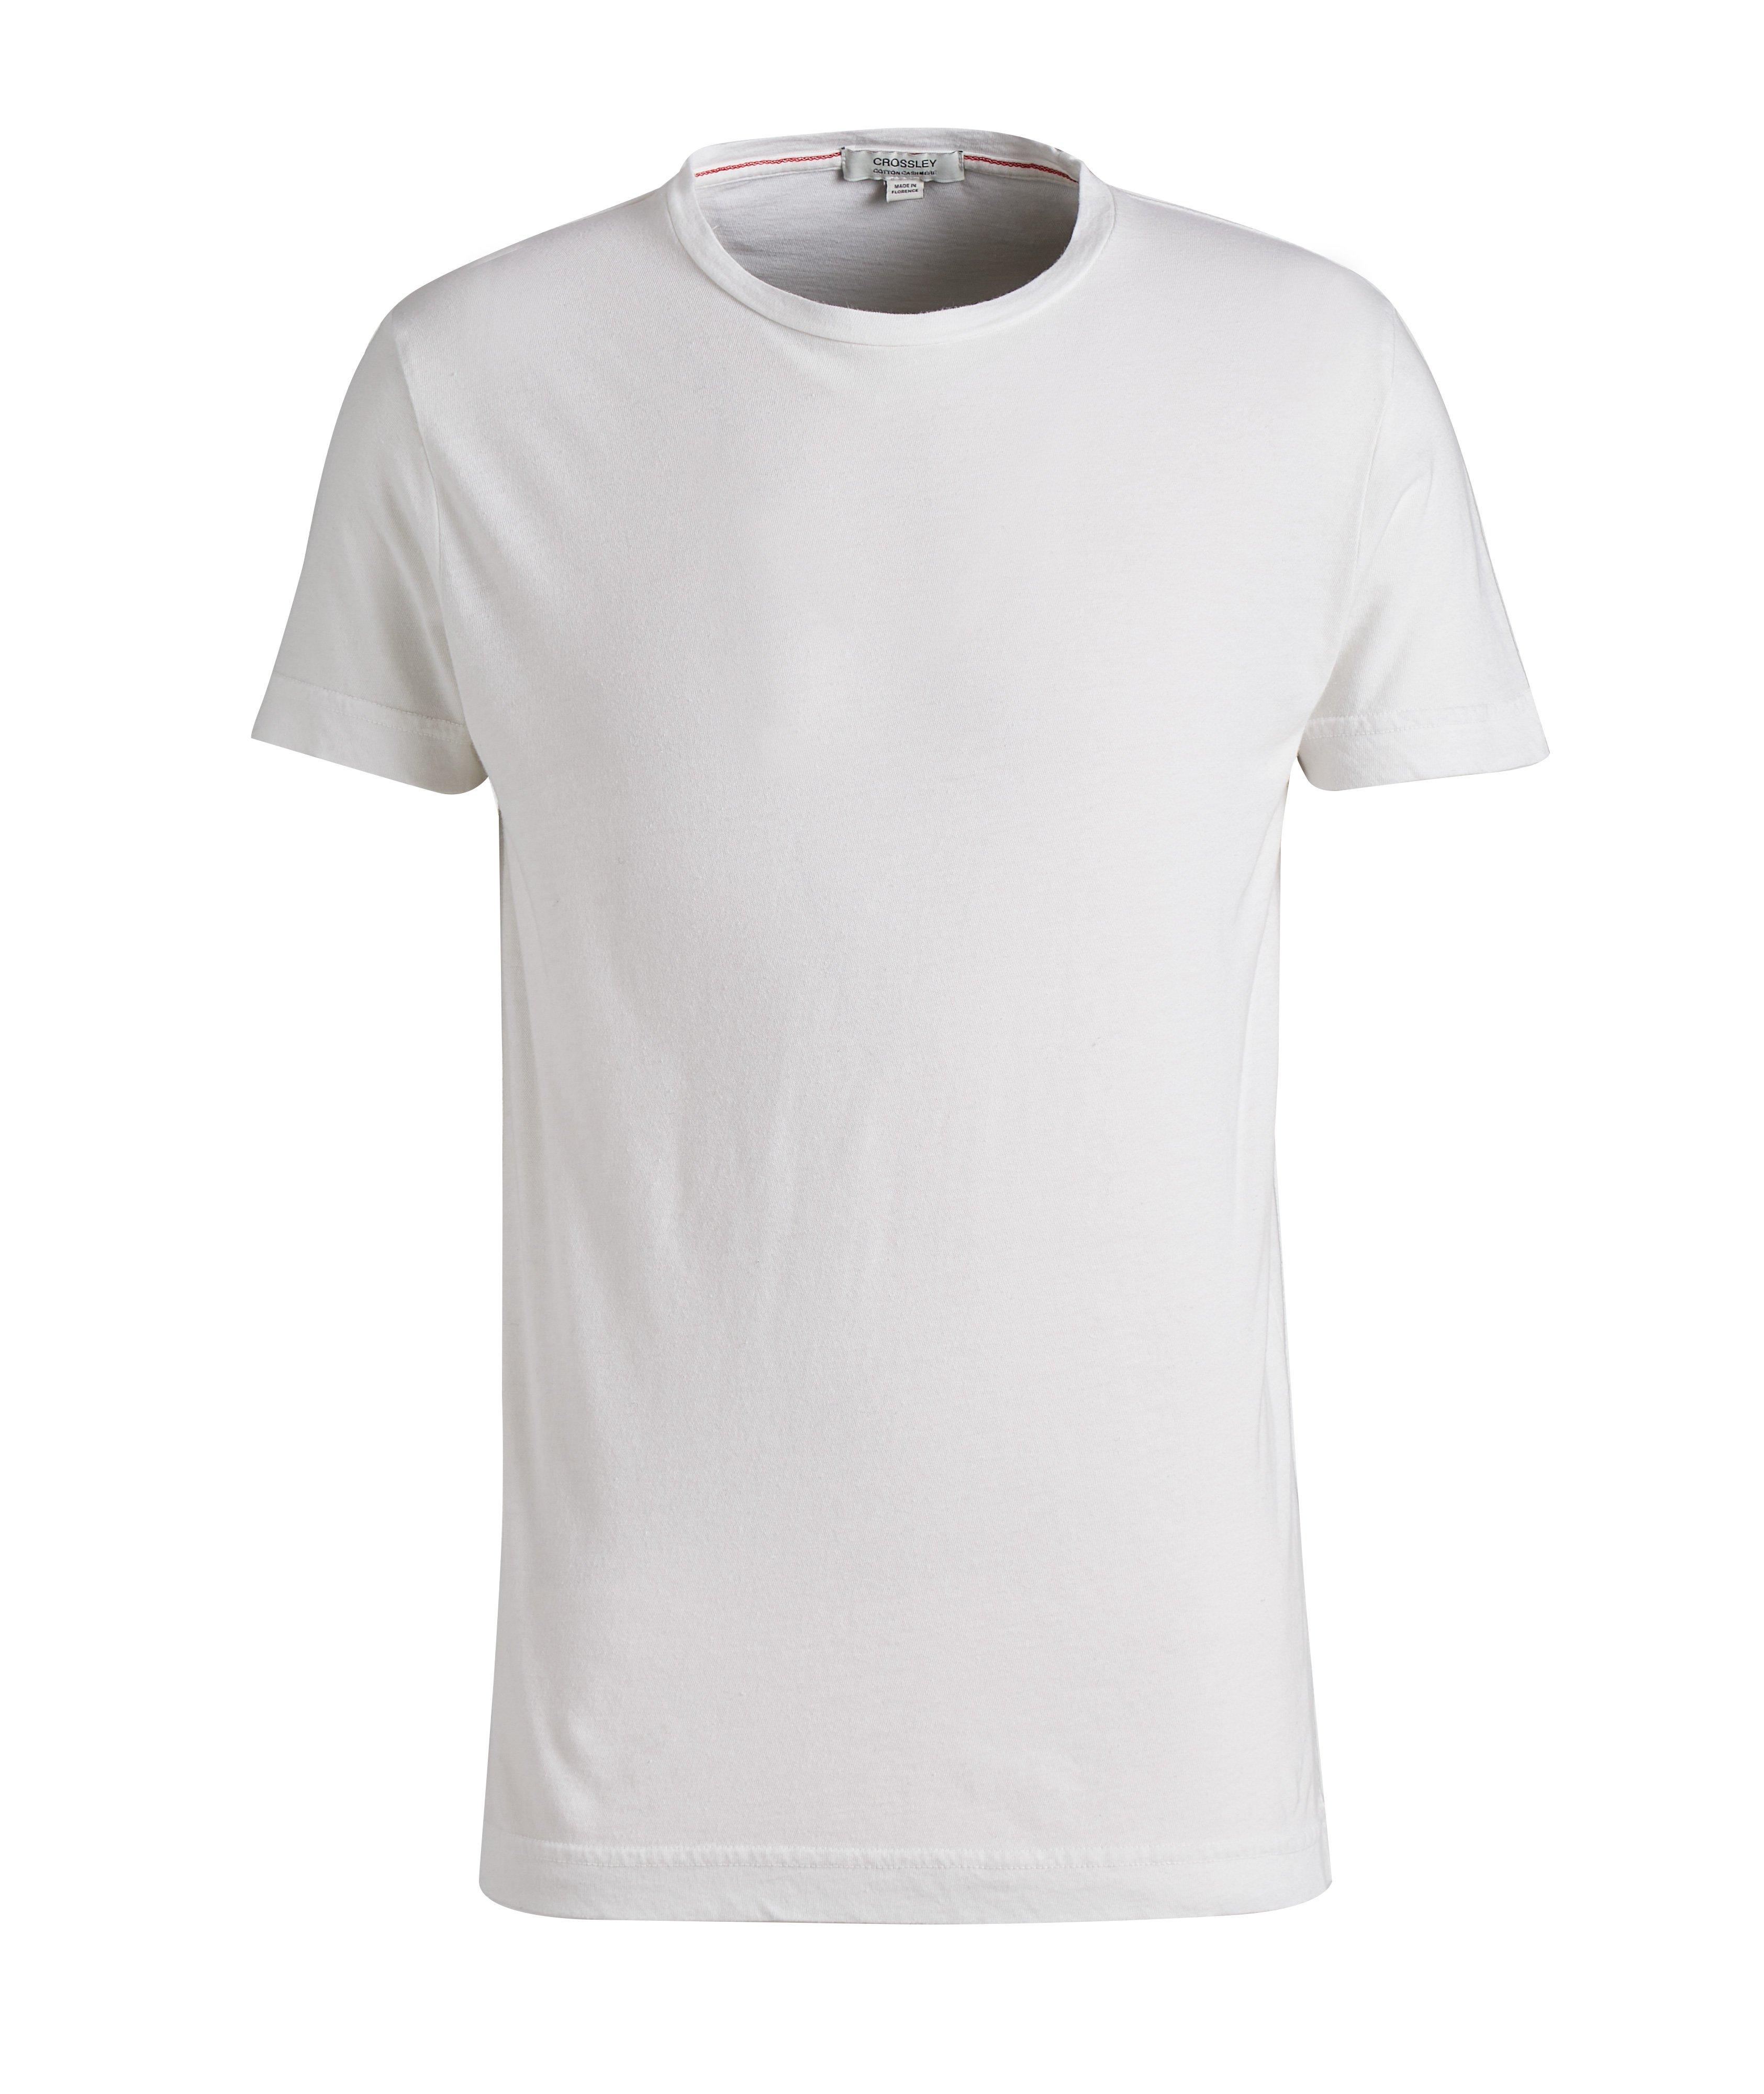 T-shirt Eterni en coton et en cachemire image 0